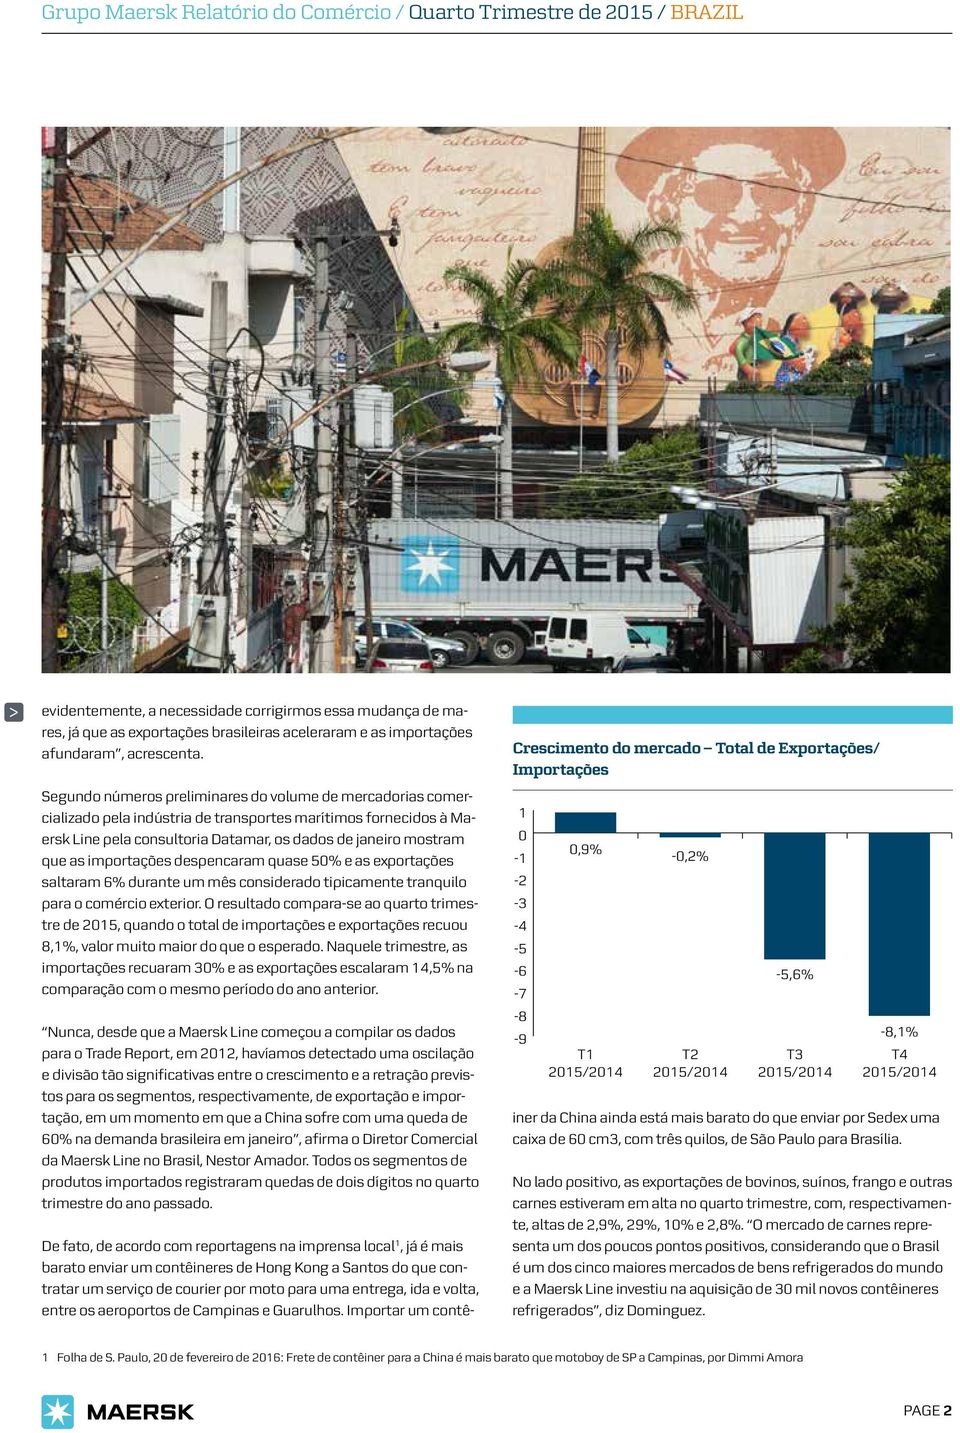 Segundo números preliminares do volume de mercadorias comercializado pela indústria de transportes marítimos fornecidos à Maersk Line pela consultoria Datamar, os dados de janeiro mostram que as